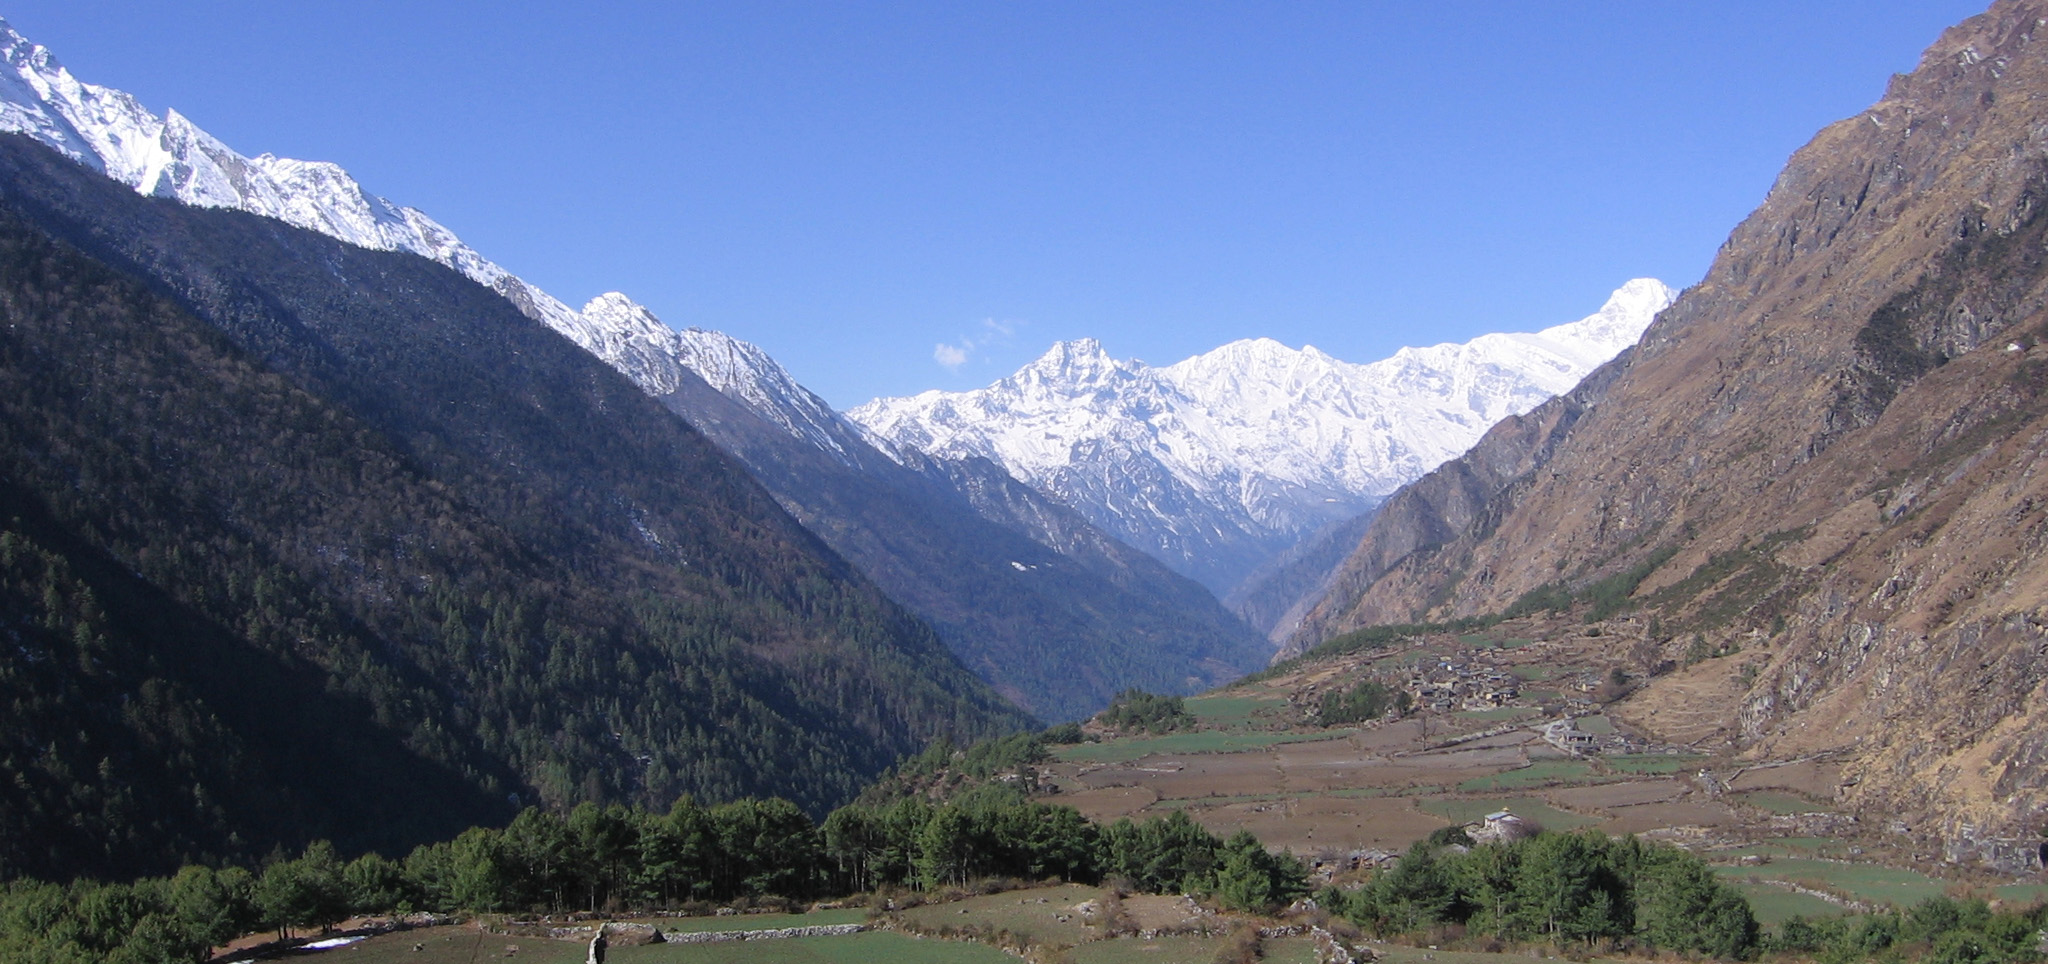 Manaslu Tsum Valley Trek in Nepal 